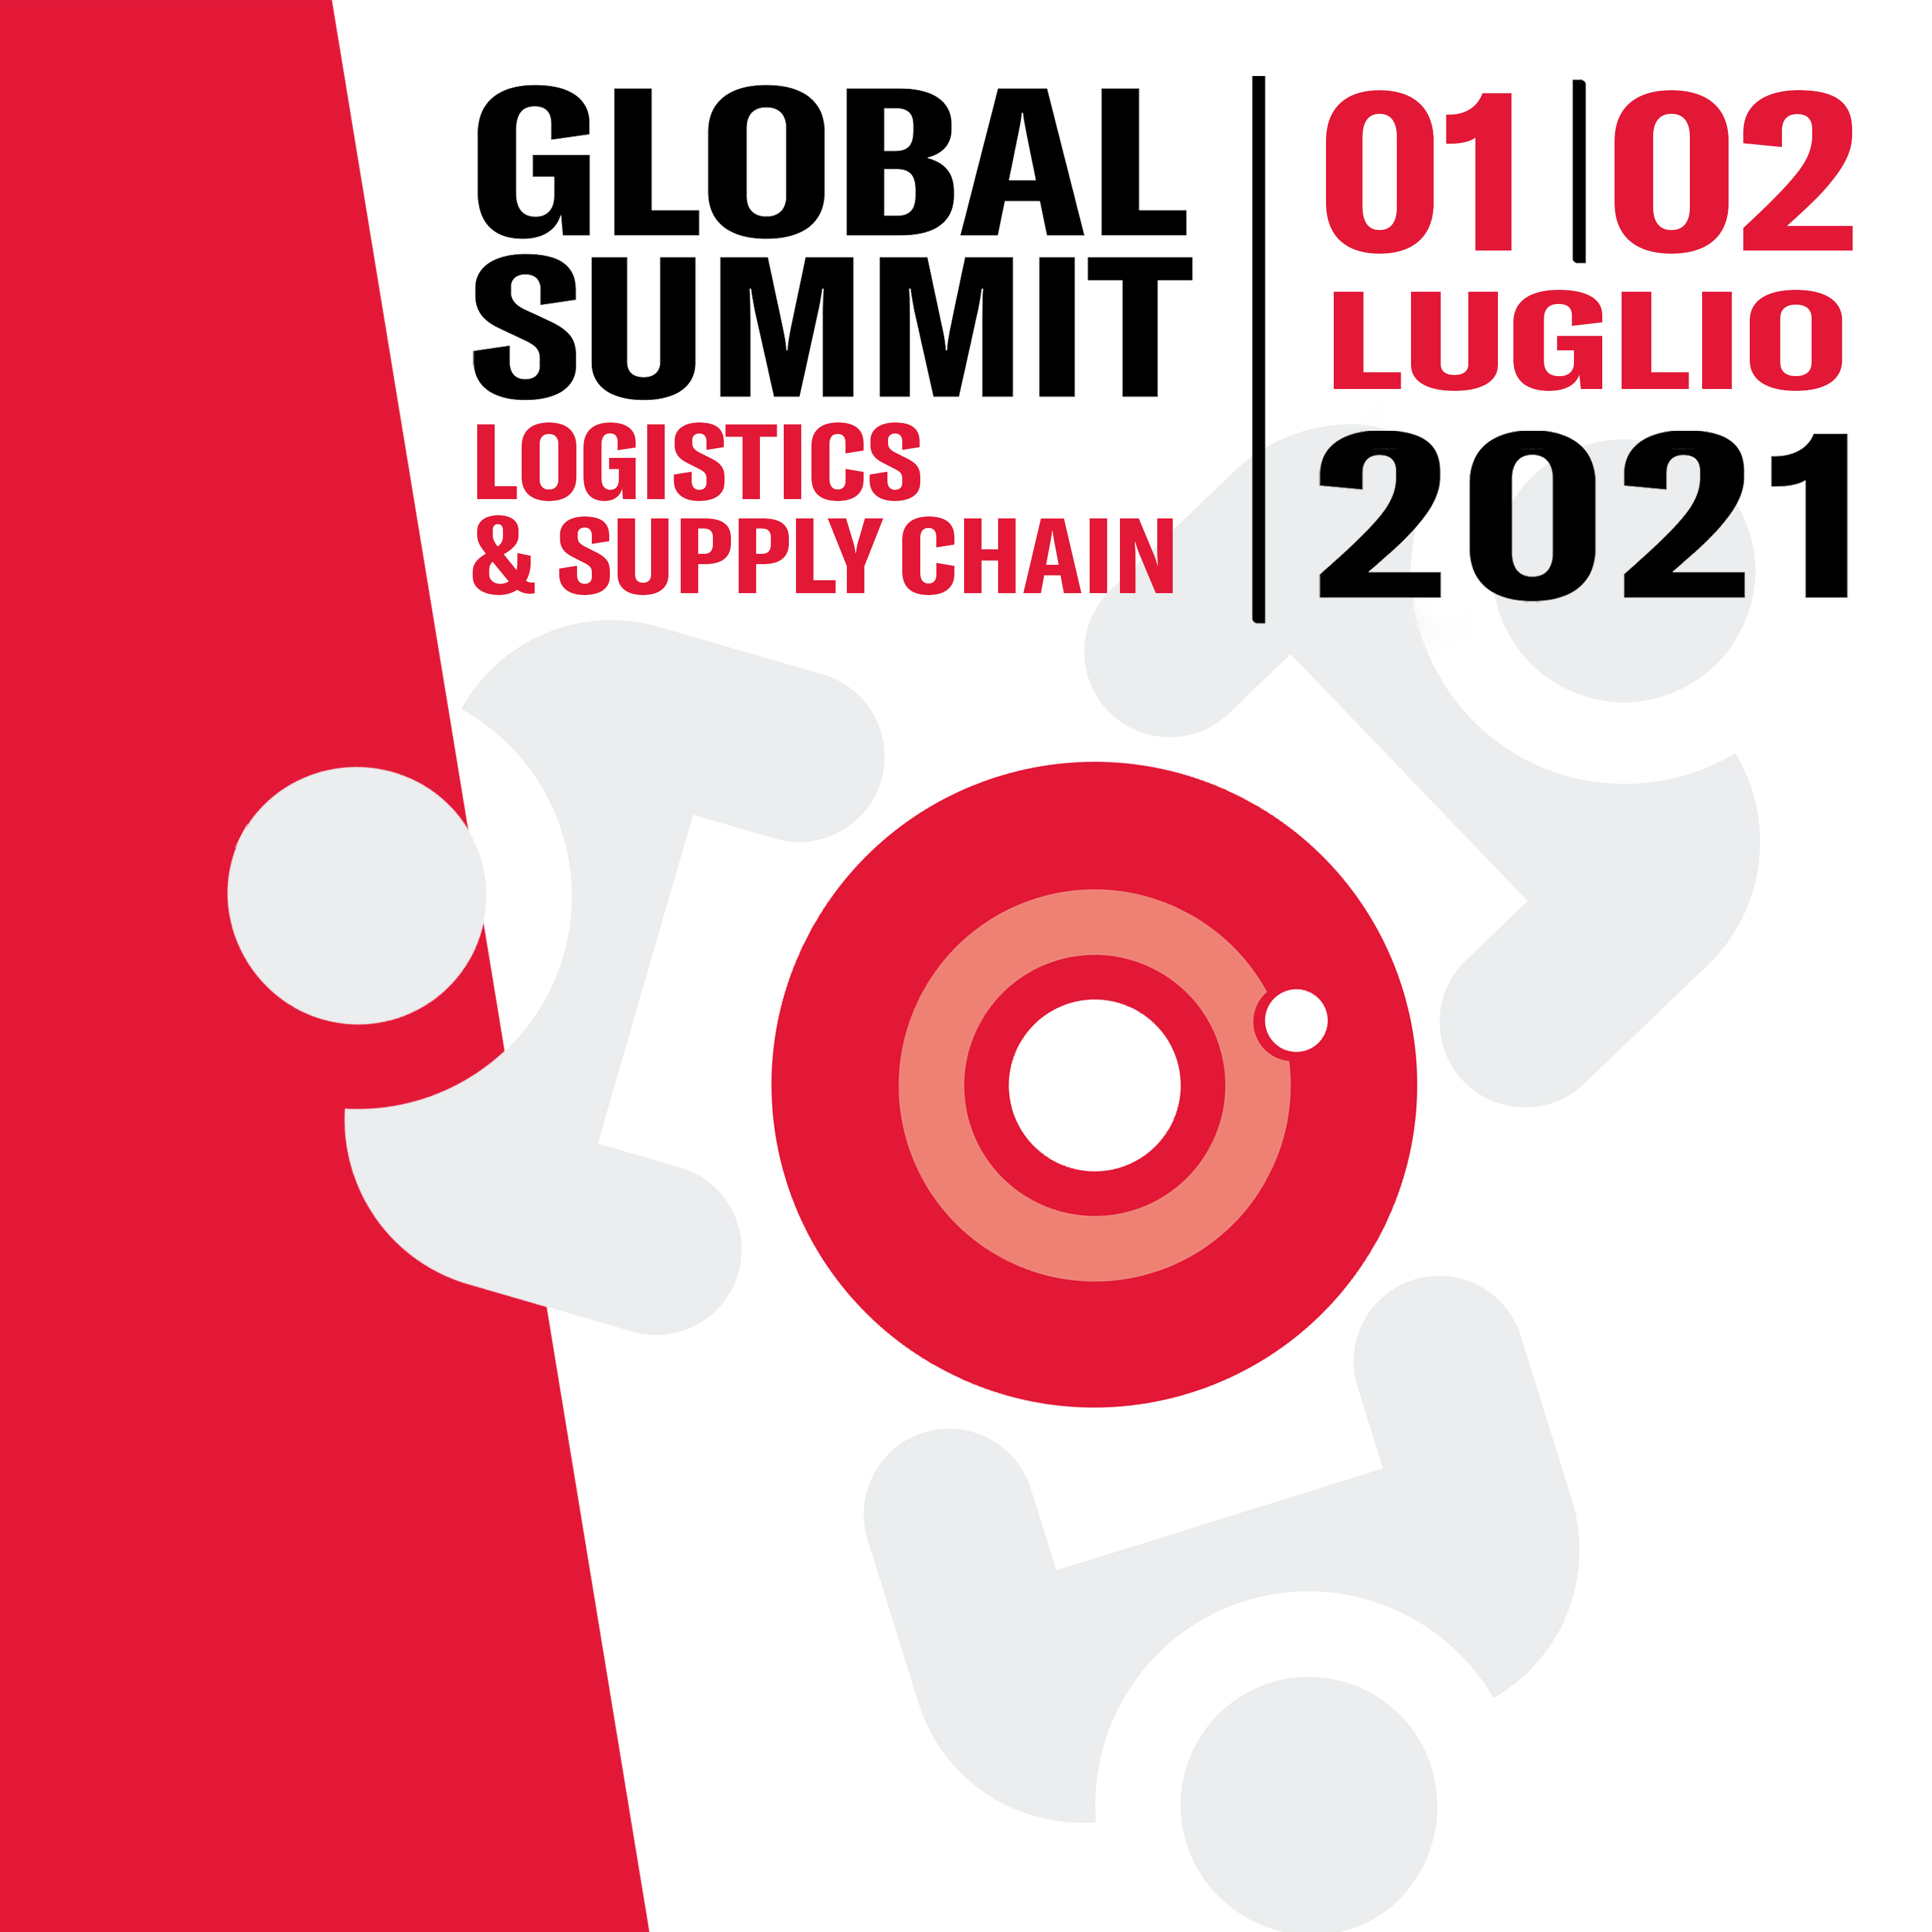 Makeitalia Supply Chain Academy parteciperà all’evento Global Summit Logistics & Supply Chain